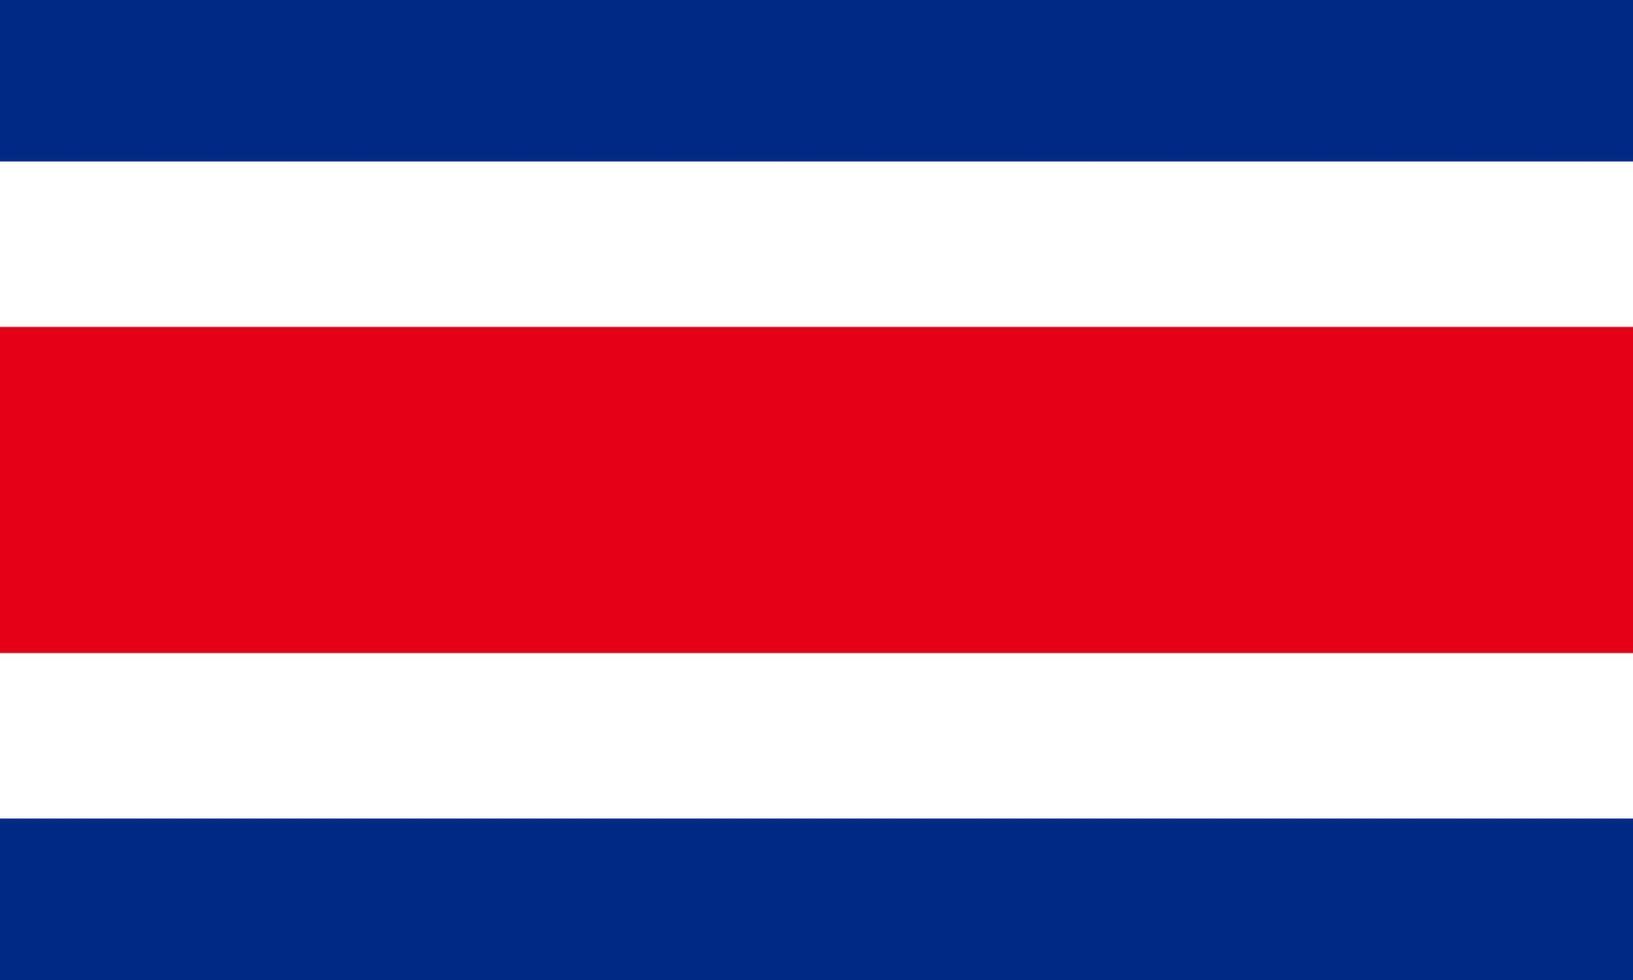 Flagge von Costa Rica. symbol des unabhängigkeitstags, souvenir-fußballspiel, knopfsprache, symbol. vektor